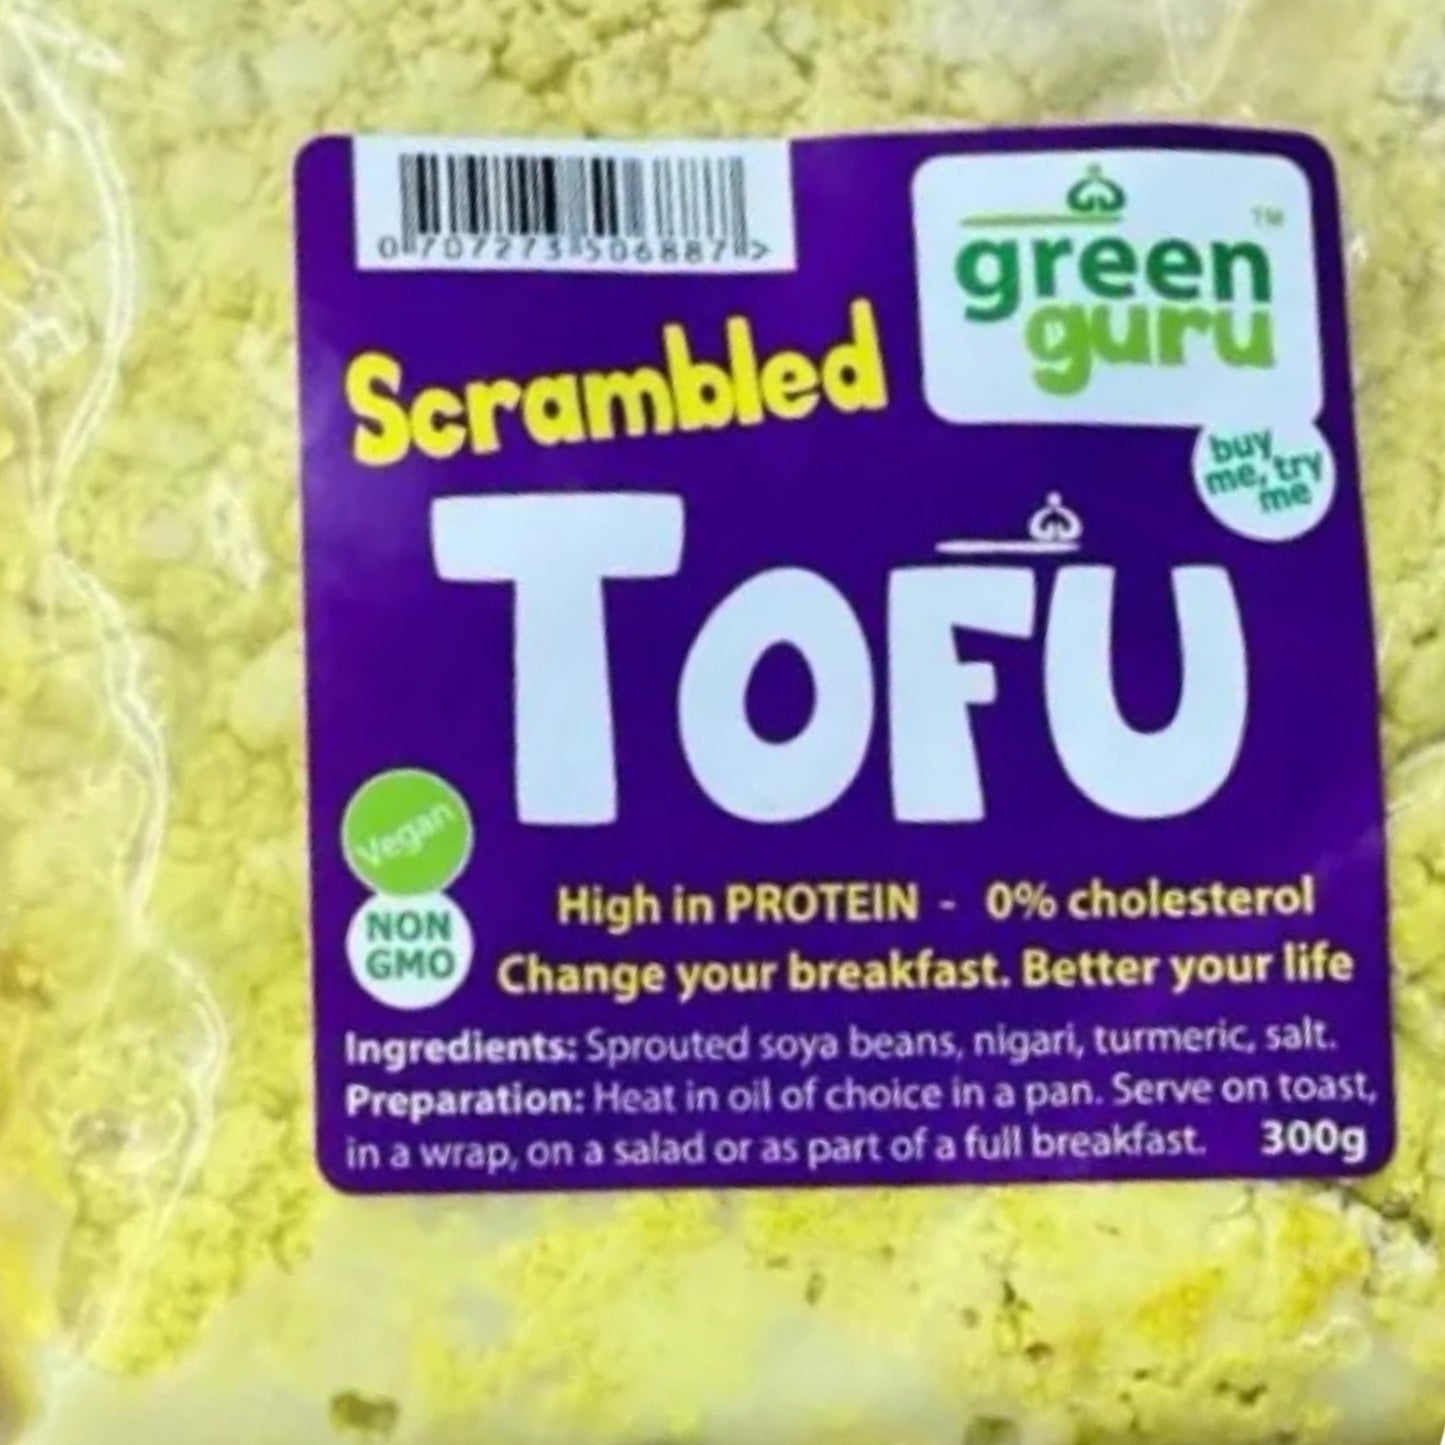 Green Guru Scrambled Tofu